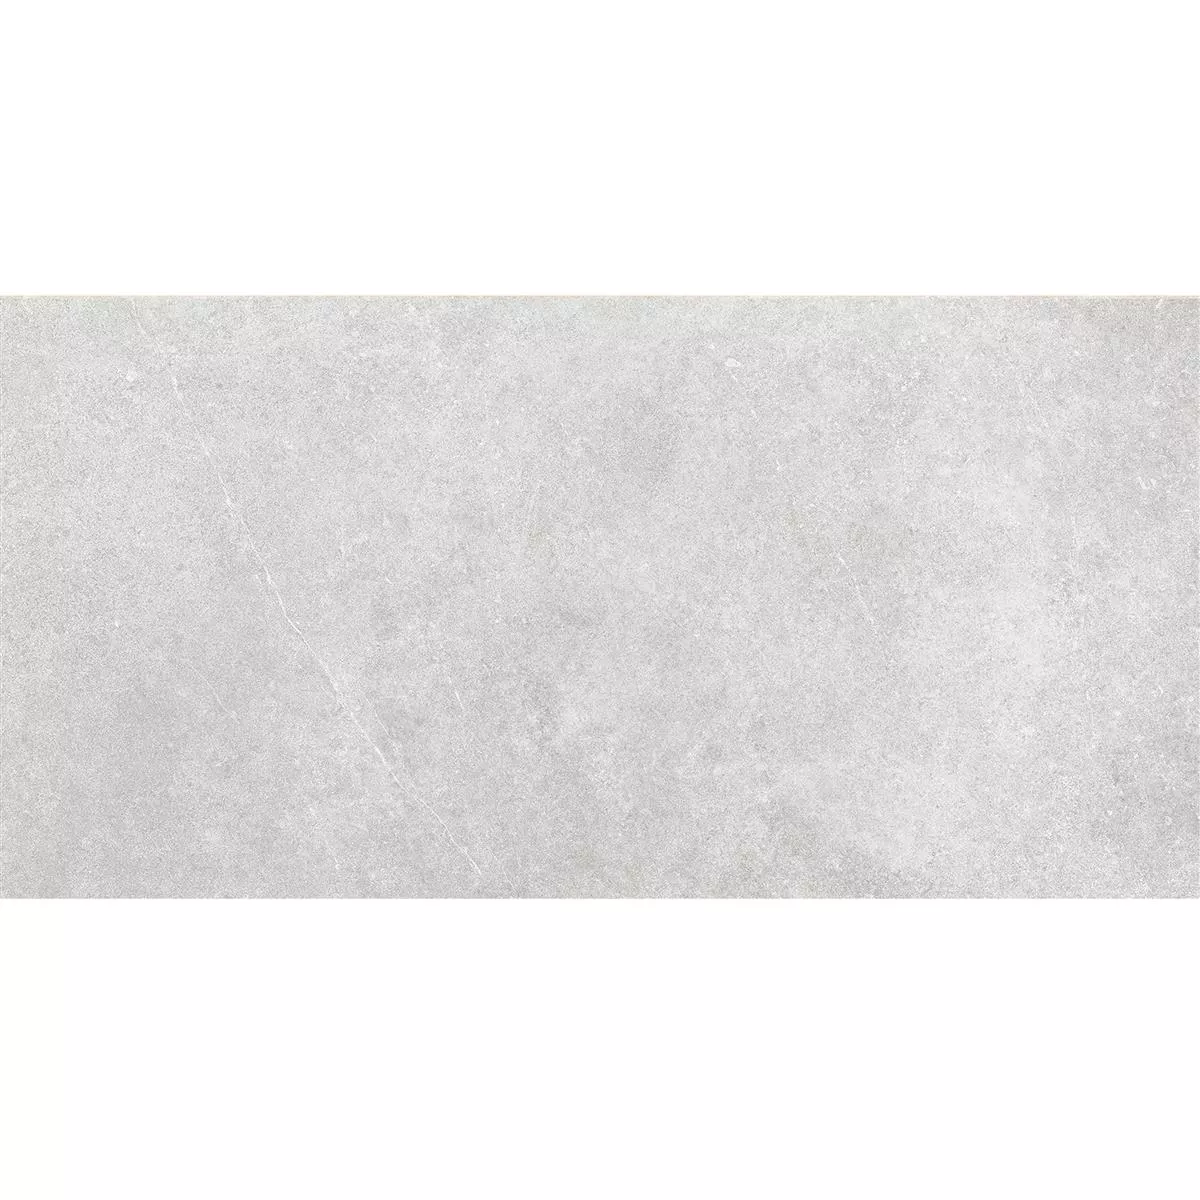 Πλακάκια Δαπέδου Montana Άγυαλο Ανοιχτό Γκρι 30x60cm / R10B